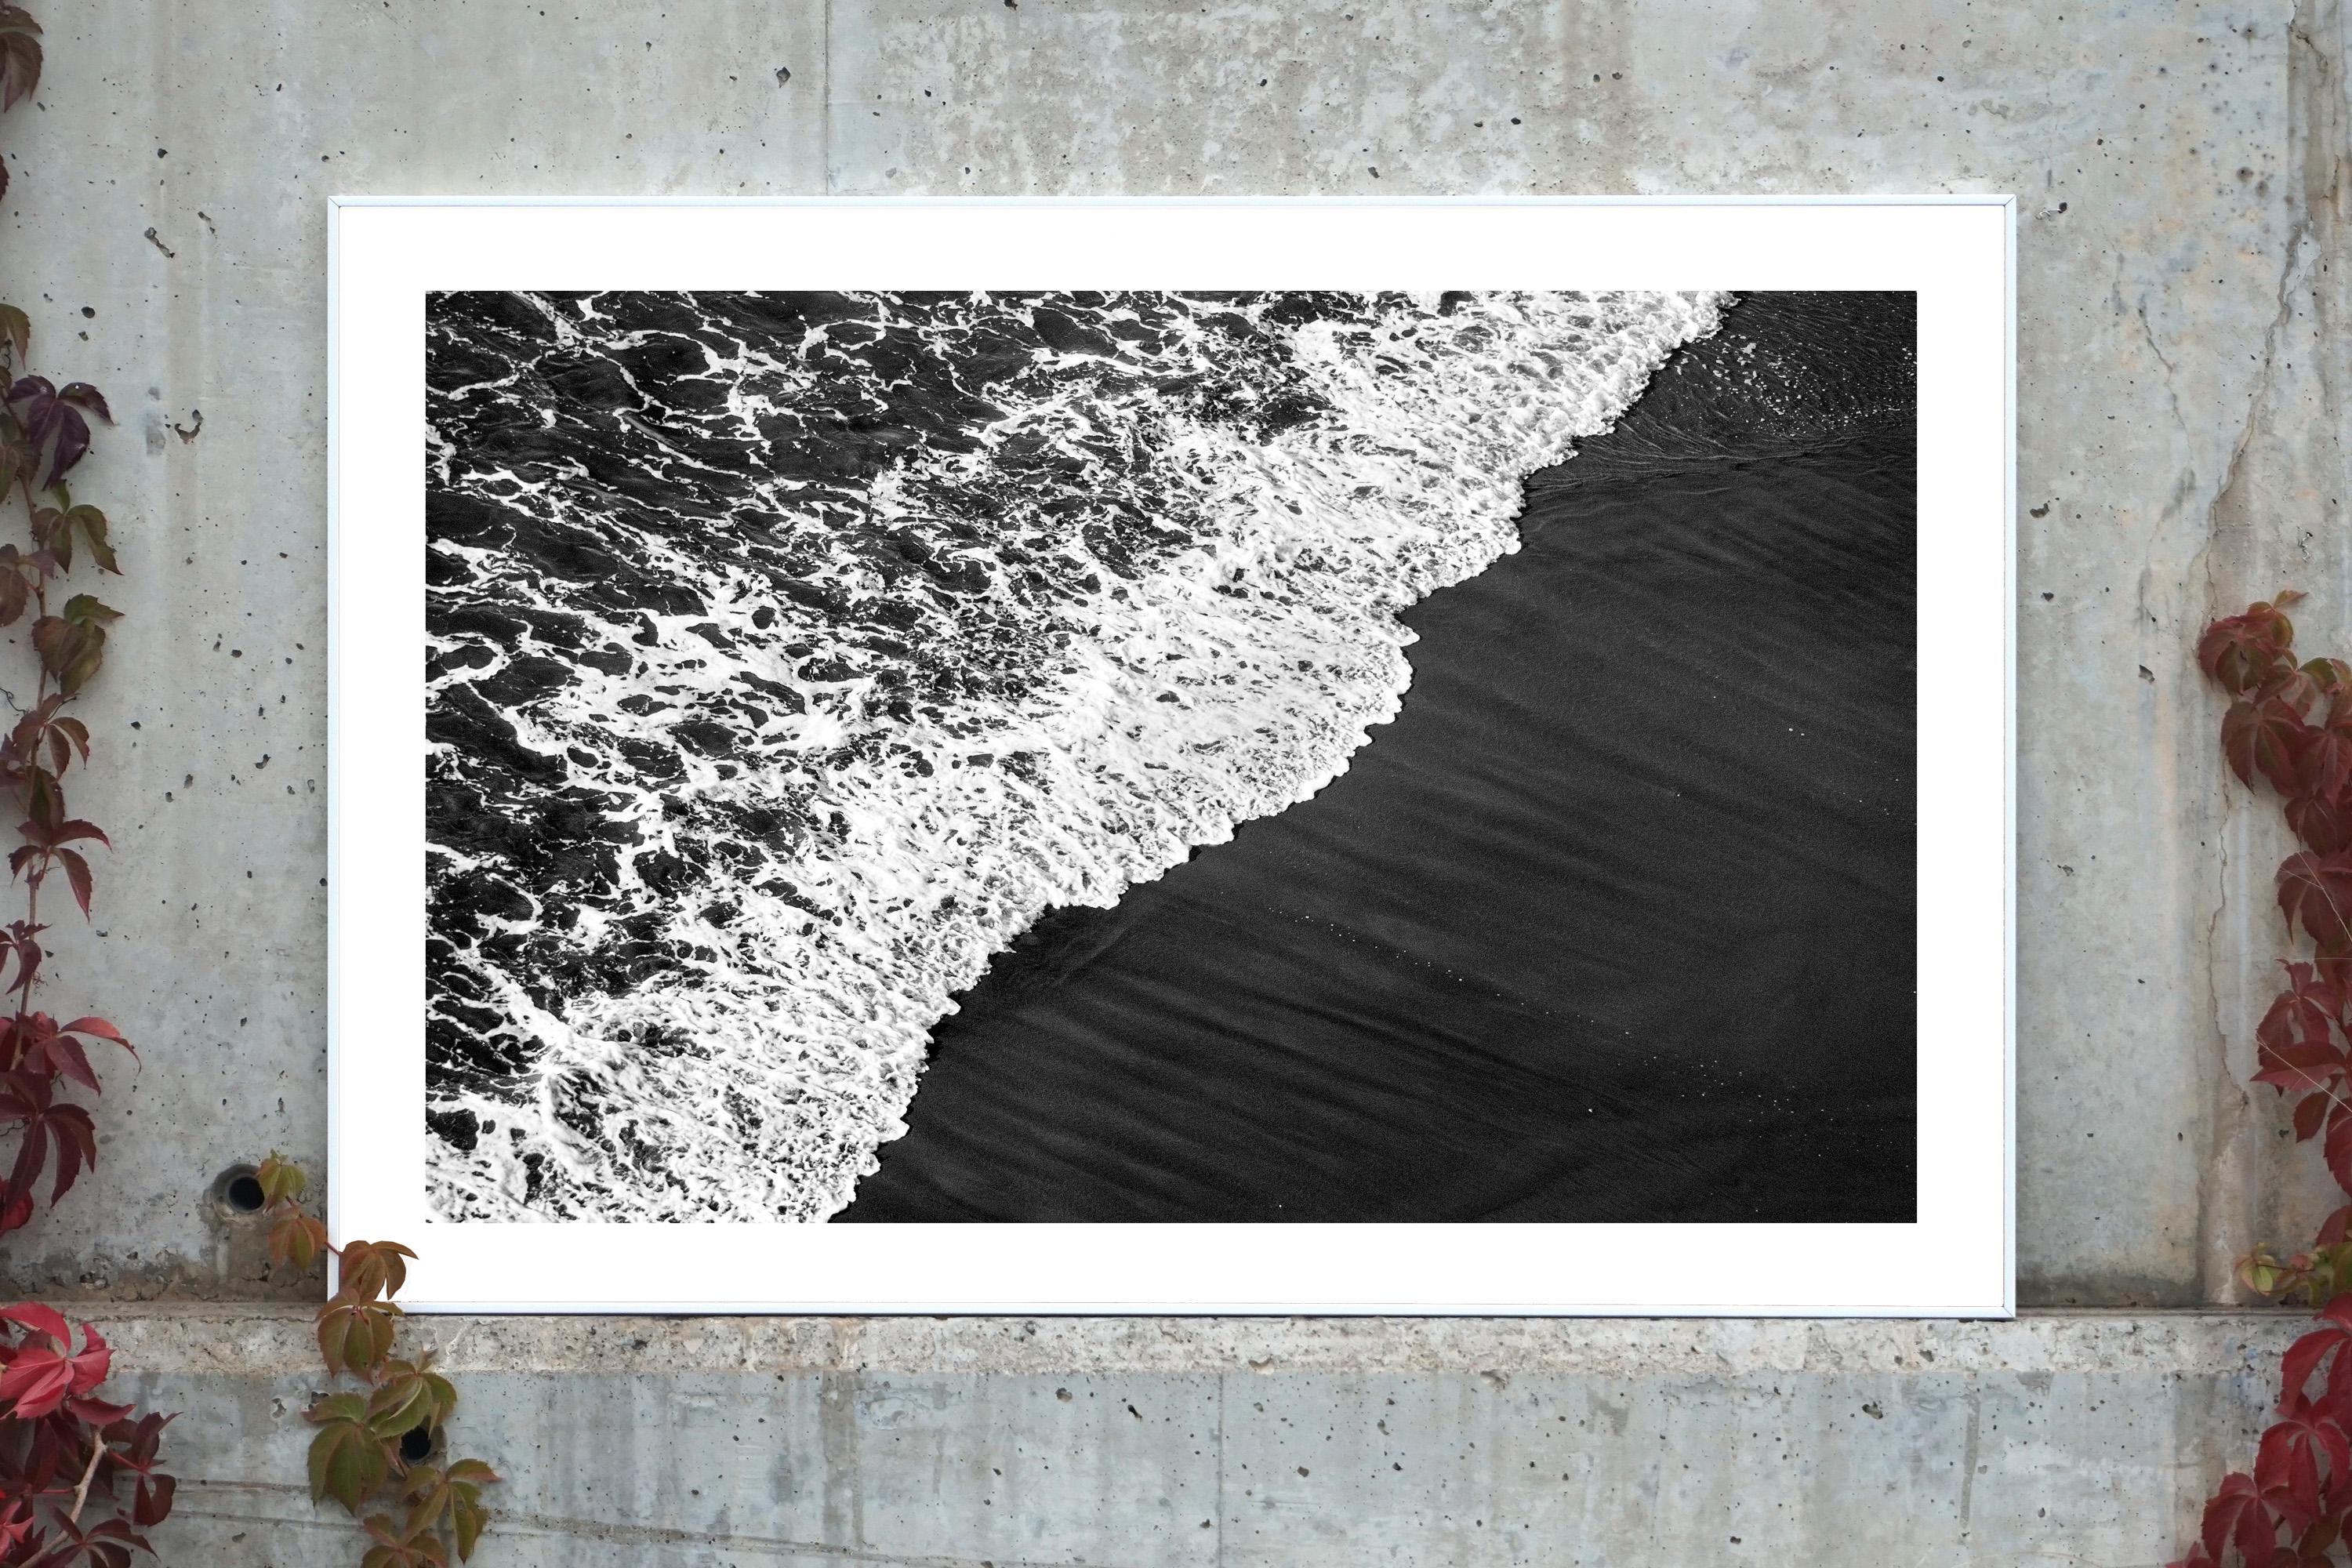 Tiefschwarze Sanduhr von tiefem Schwarz, Schwarz-Weiß- Meereslandschaft, Rauchwelle, die Küste erhebt – Photograph von Kind of Cyan